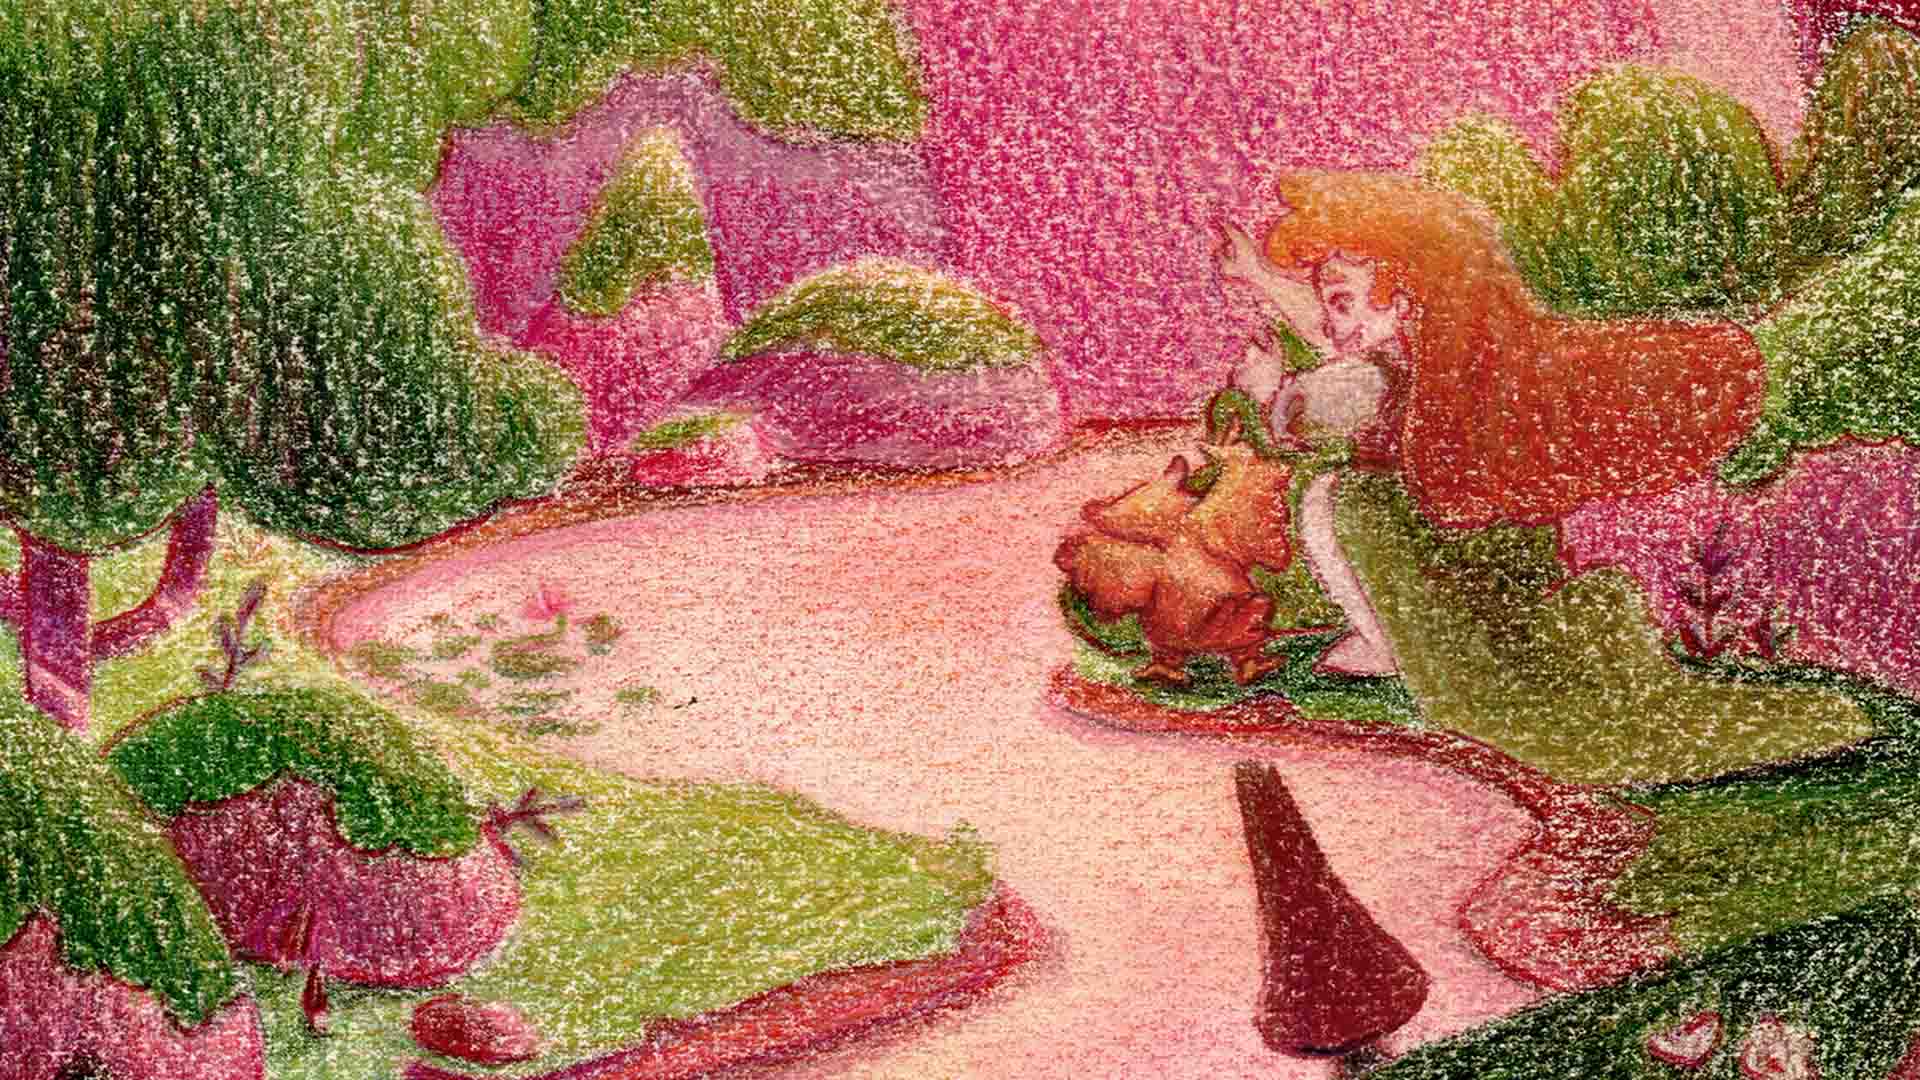 Projet d'illustration pour un livre jeunesse. Une petite chouette, Célestine, vient se poser sur la main d'une jeune fille, Pernelle, en plein milieu d'une forêt. Une biche et des lapins curieux viennent assister à la scène.